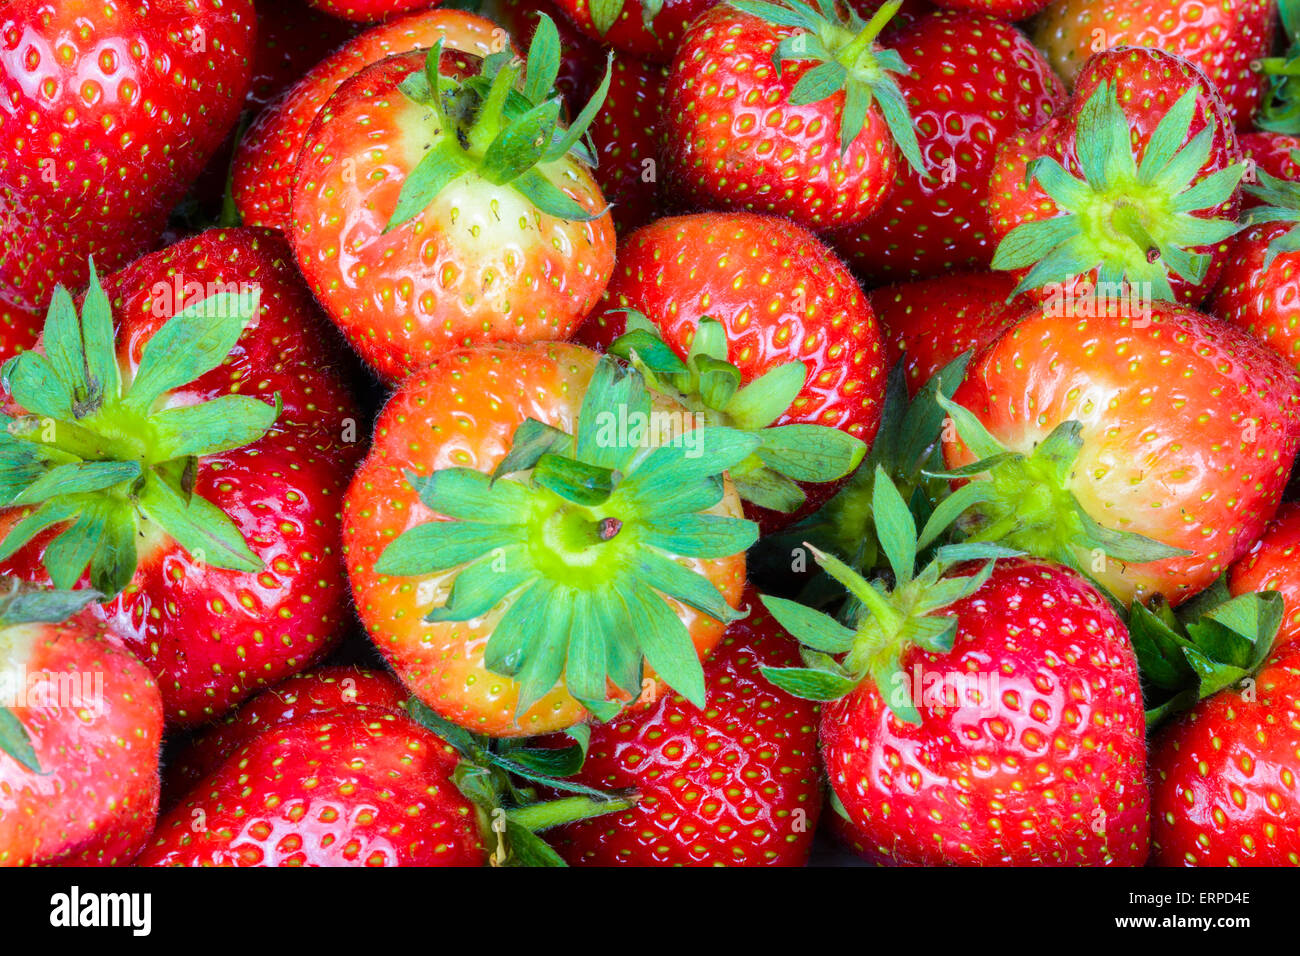 Tamaños mezclados de maduras fresas en inglés. Foto de stock